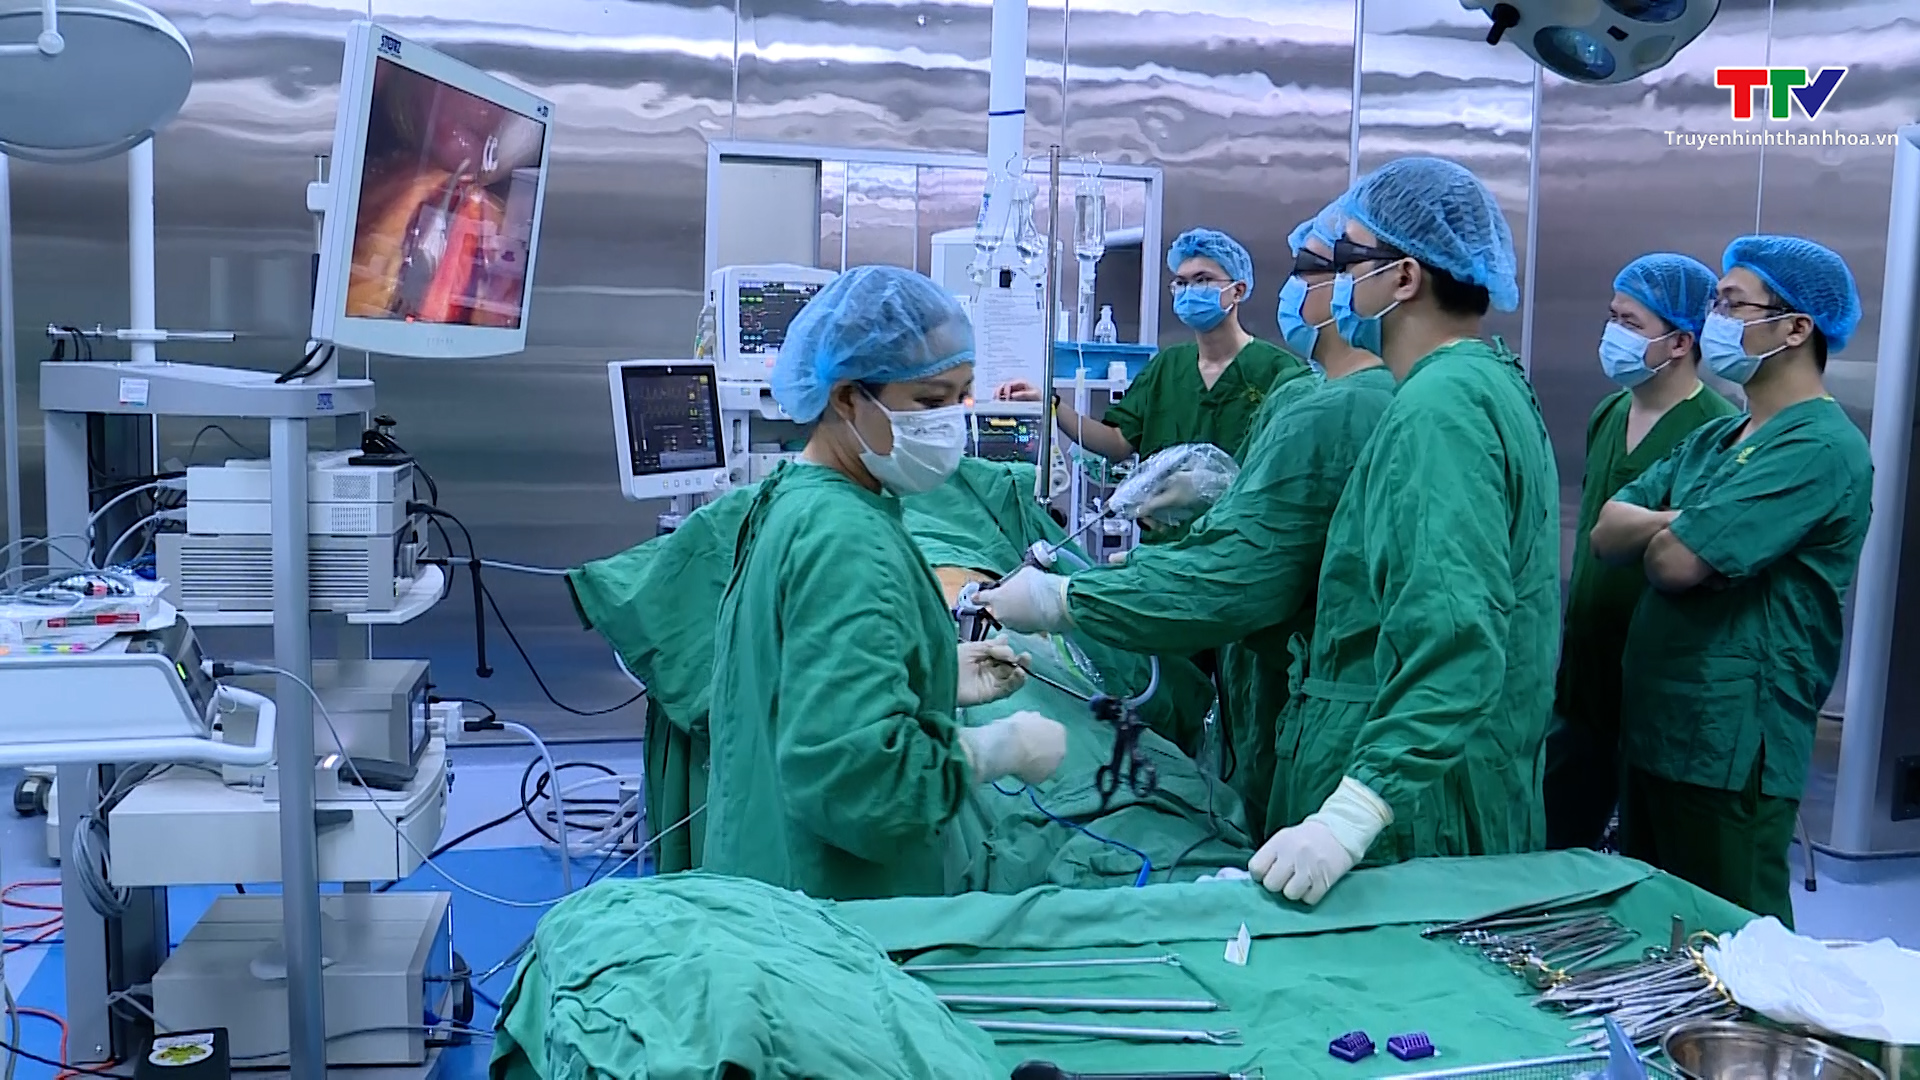 Bệnh viện Đa khoa tỉnh lần đầu tiên thực hiện phẫu thuật lấy thận sử dụng hệ thống nội soi 3D, 4K- Ảnh 1.